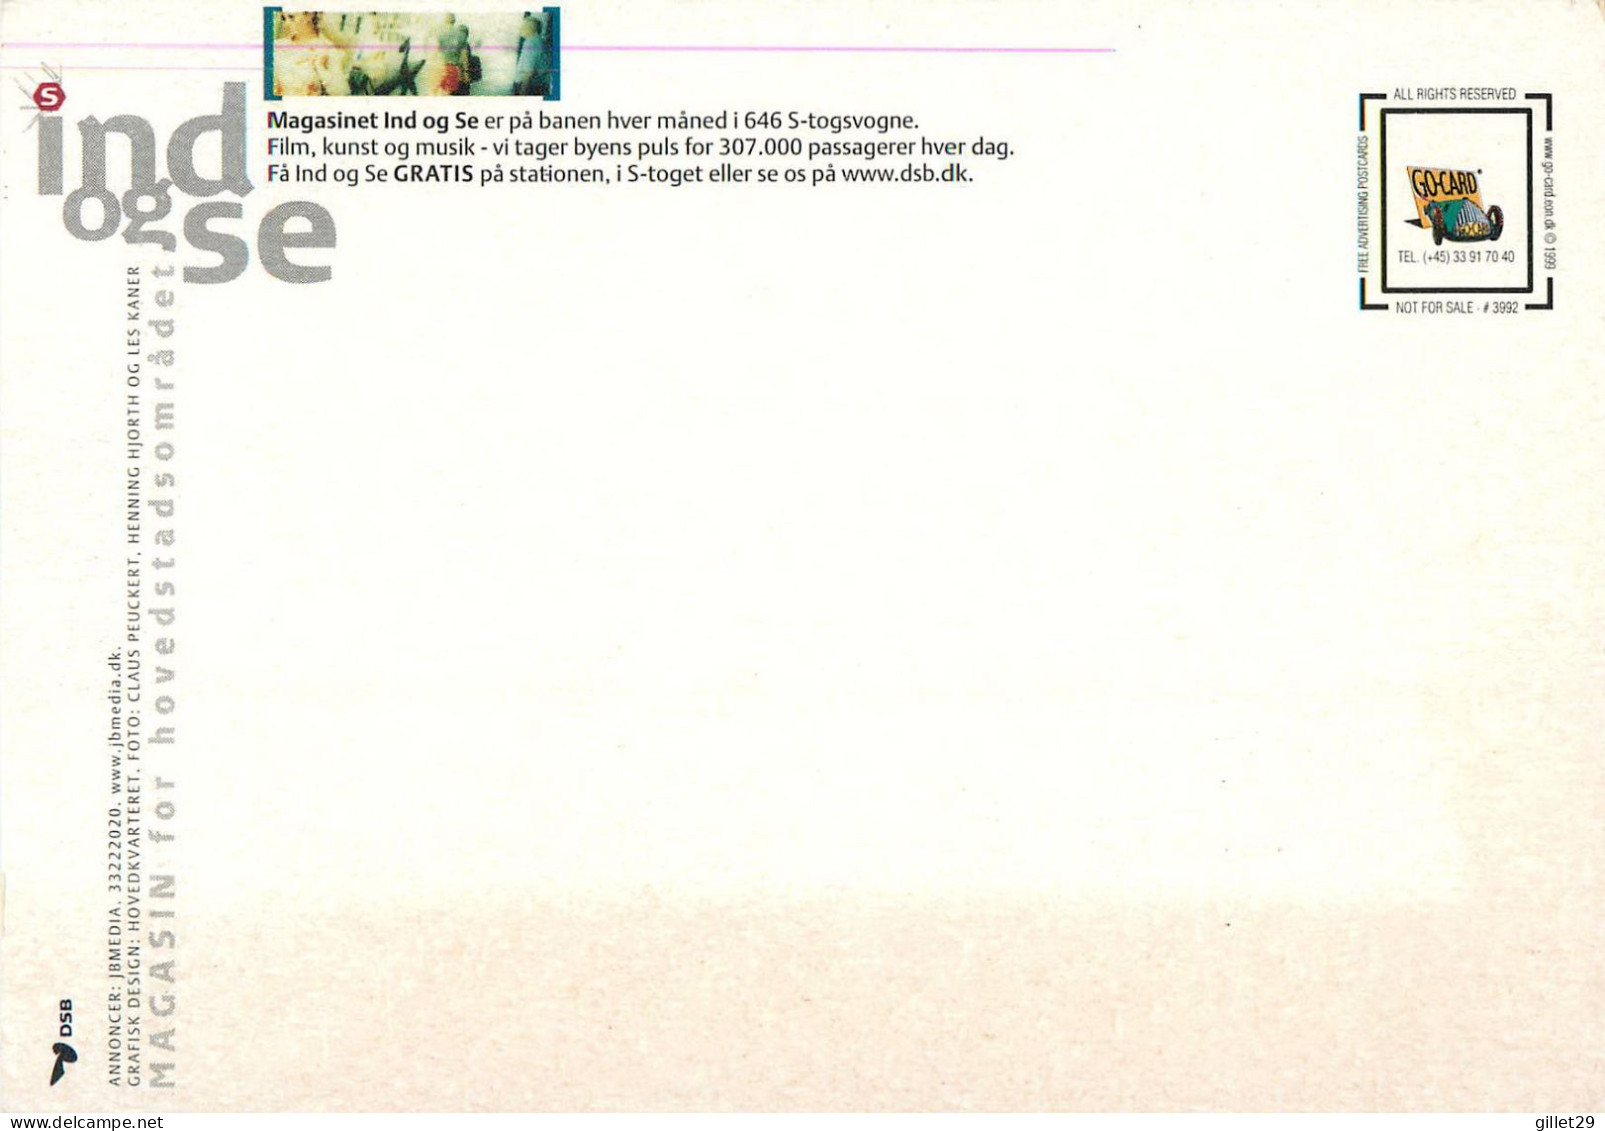 ADVERTISING, PUBLICITÉ - LE MAGAZINE VENEZ VOIR - MAGASINET IND OG SE - GO-CARD 1999 No 3992 - - Publicité